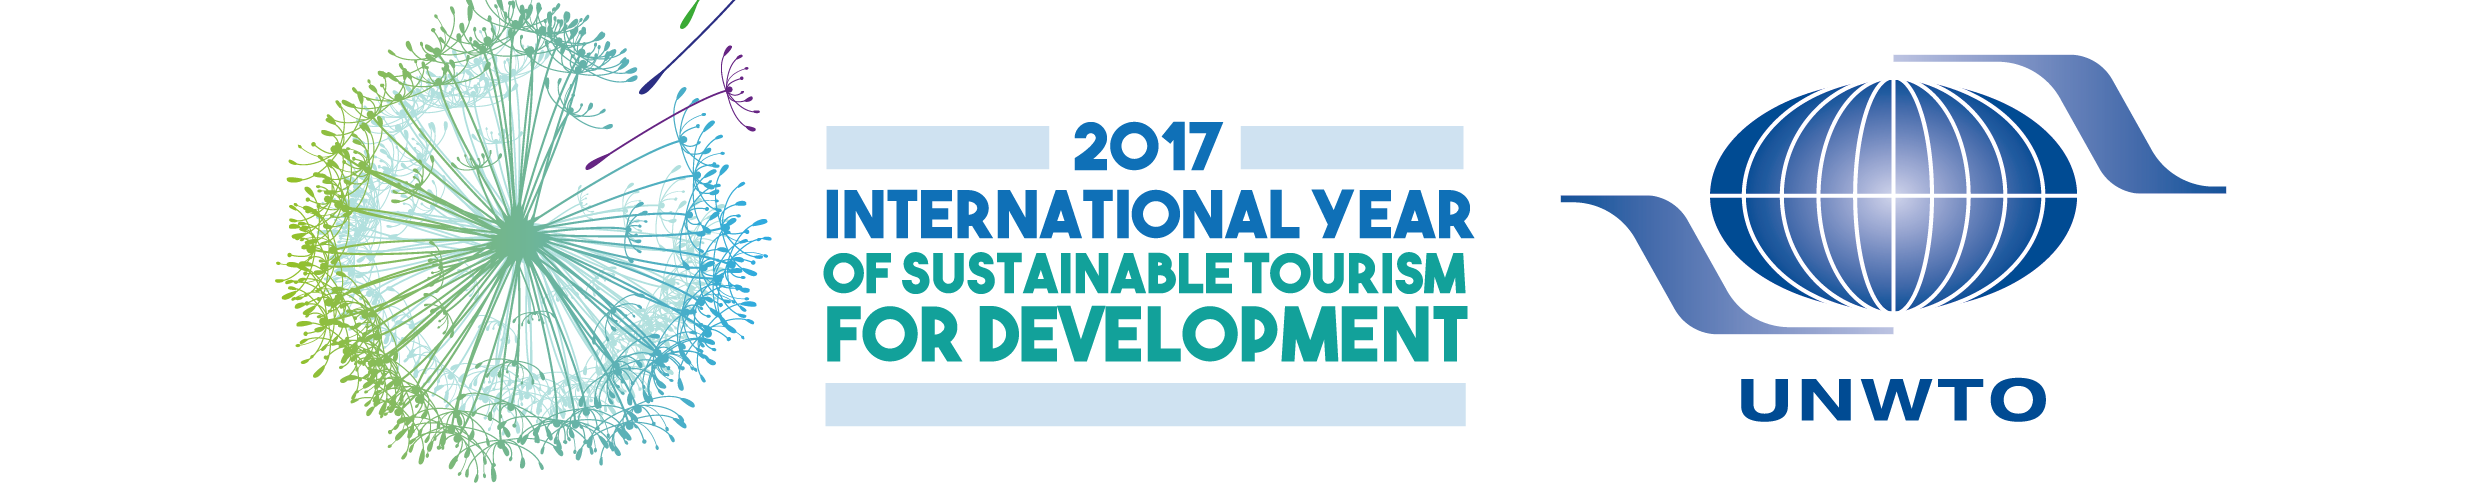 Stati Generali del Turismo Sostenibile - UNWTO 2017 suistainable year